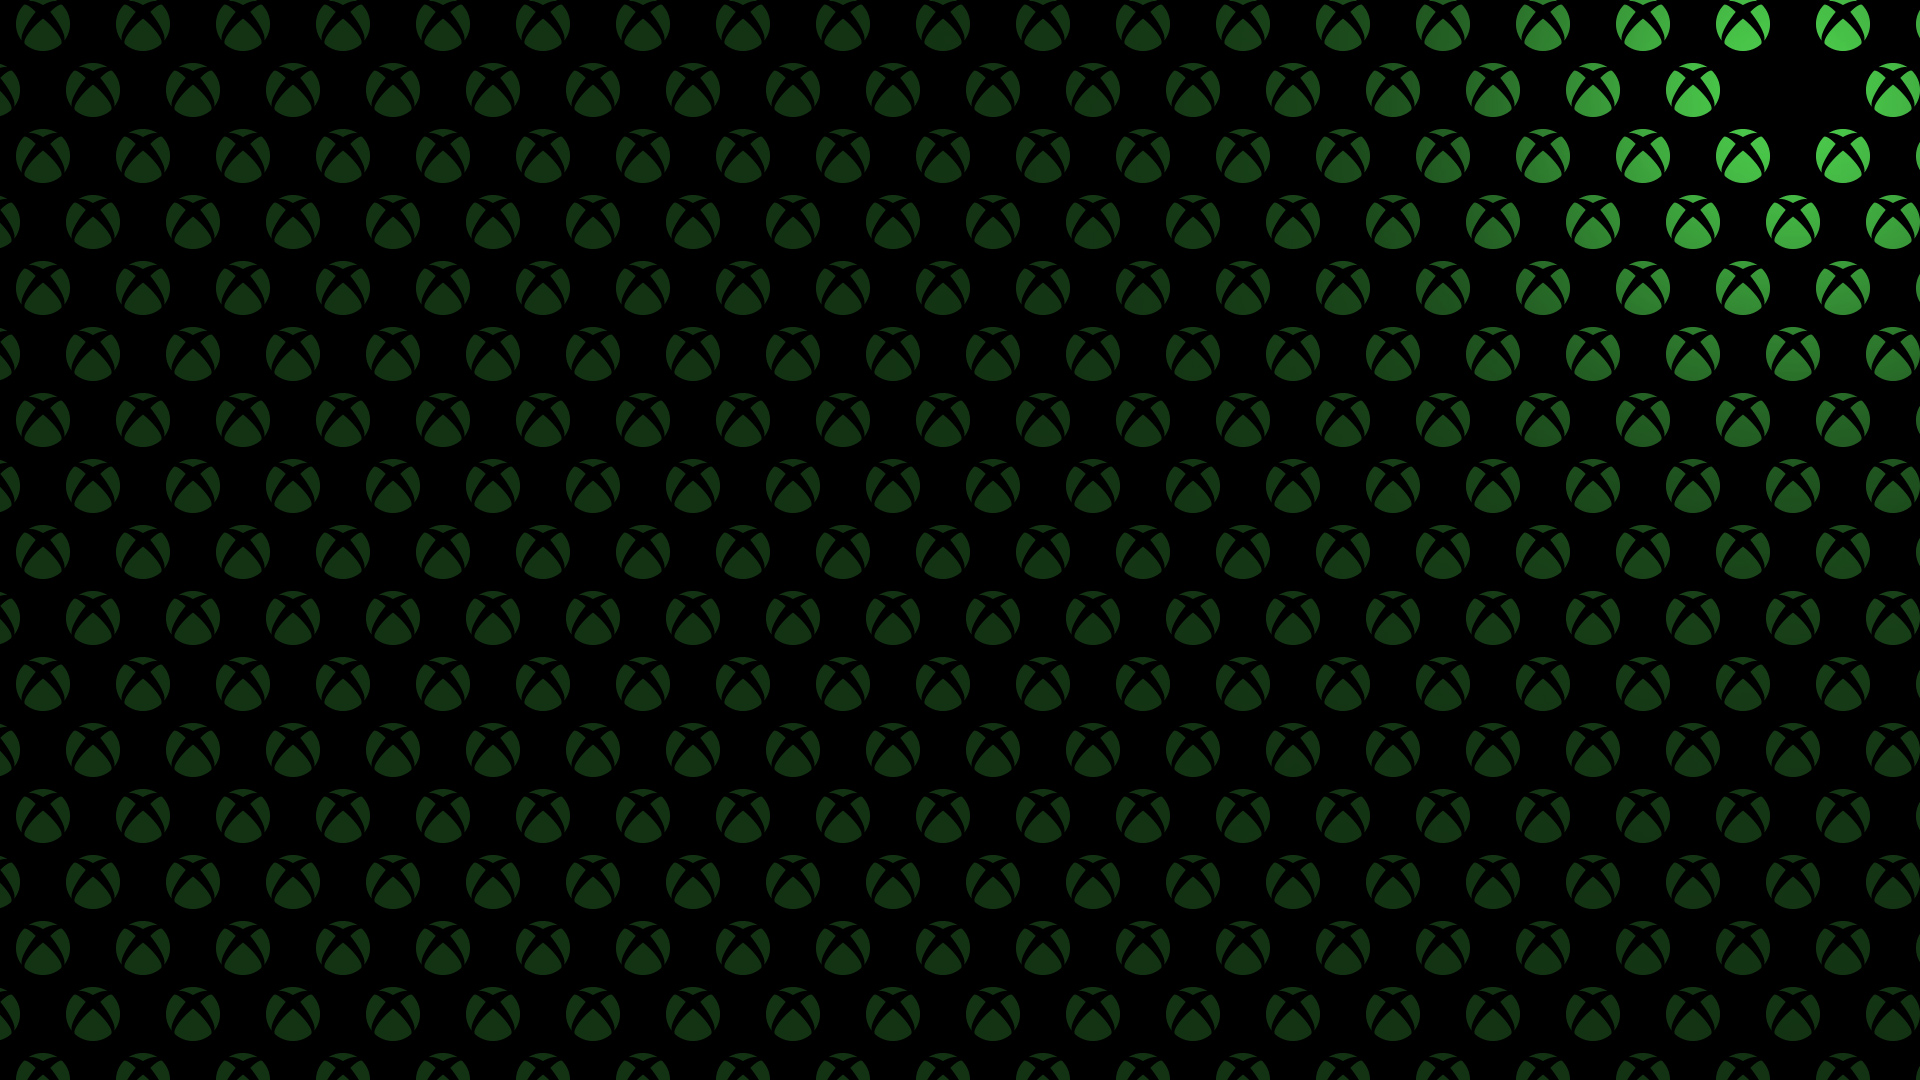 Mẫu logo Xbox được tạo ra từ những đốm sáng tạo, tạo nên một hình ảnh cực kỳ độc đáo cho bất kỳ dòng máy chơi game Xbox nào. Bạn sẽ yêu thích sự tinh tế và hoàn hảo của mỗi điểm sáng trên nền logo đầy màu sắc và tự hào khi sử dụng chúng.